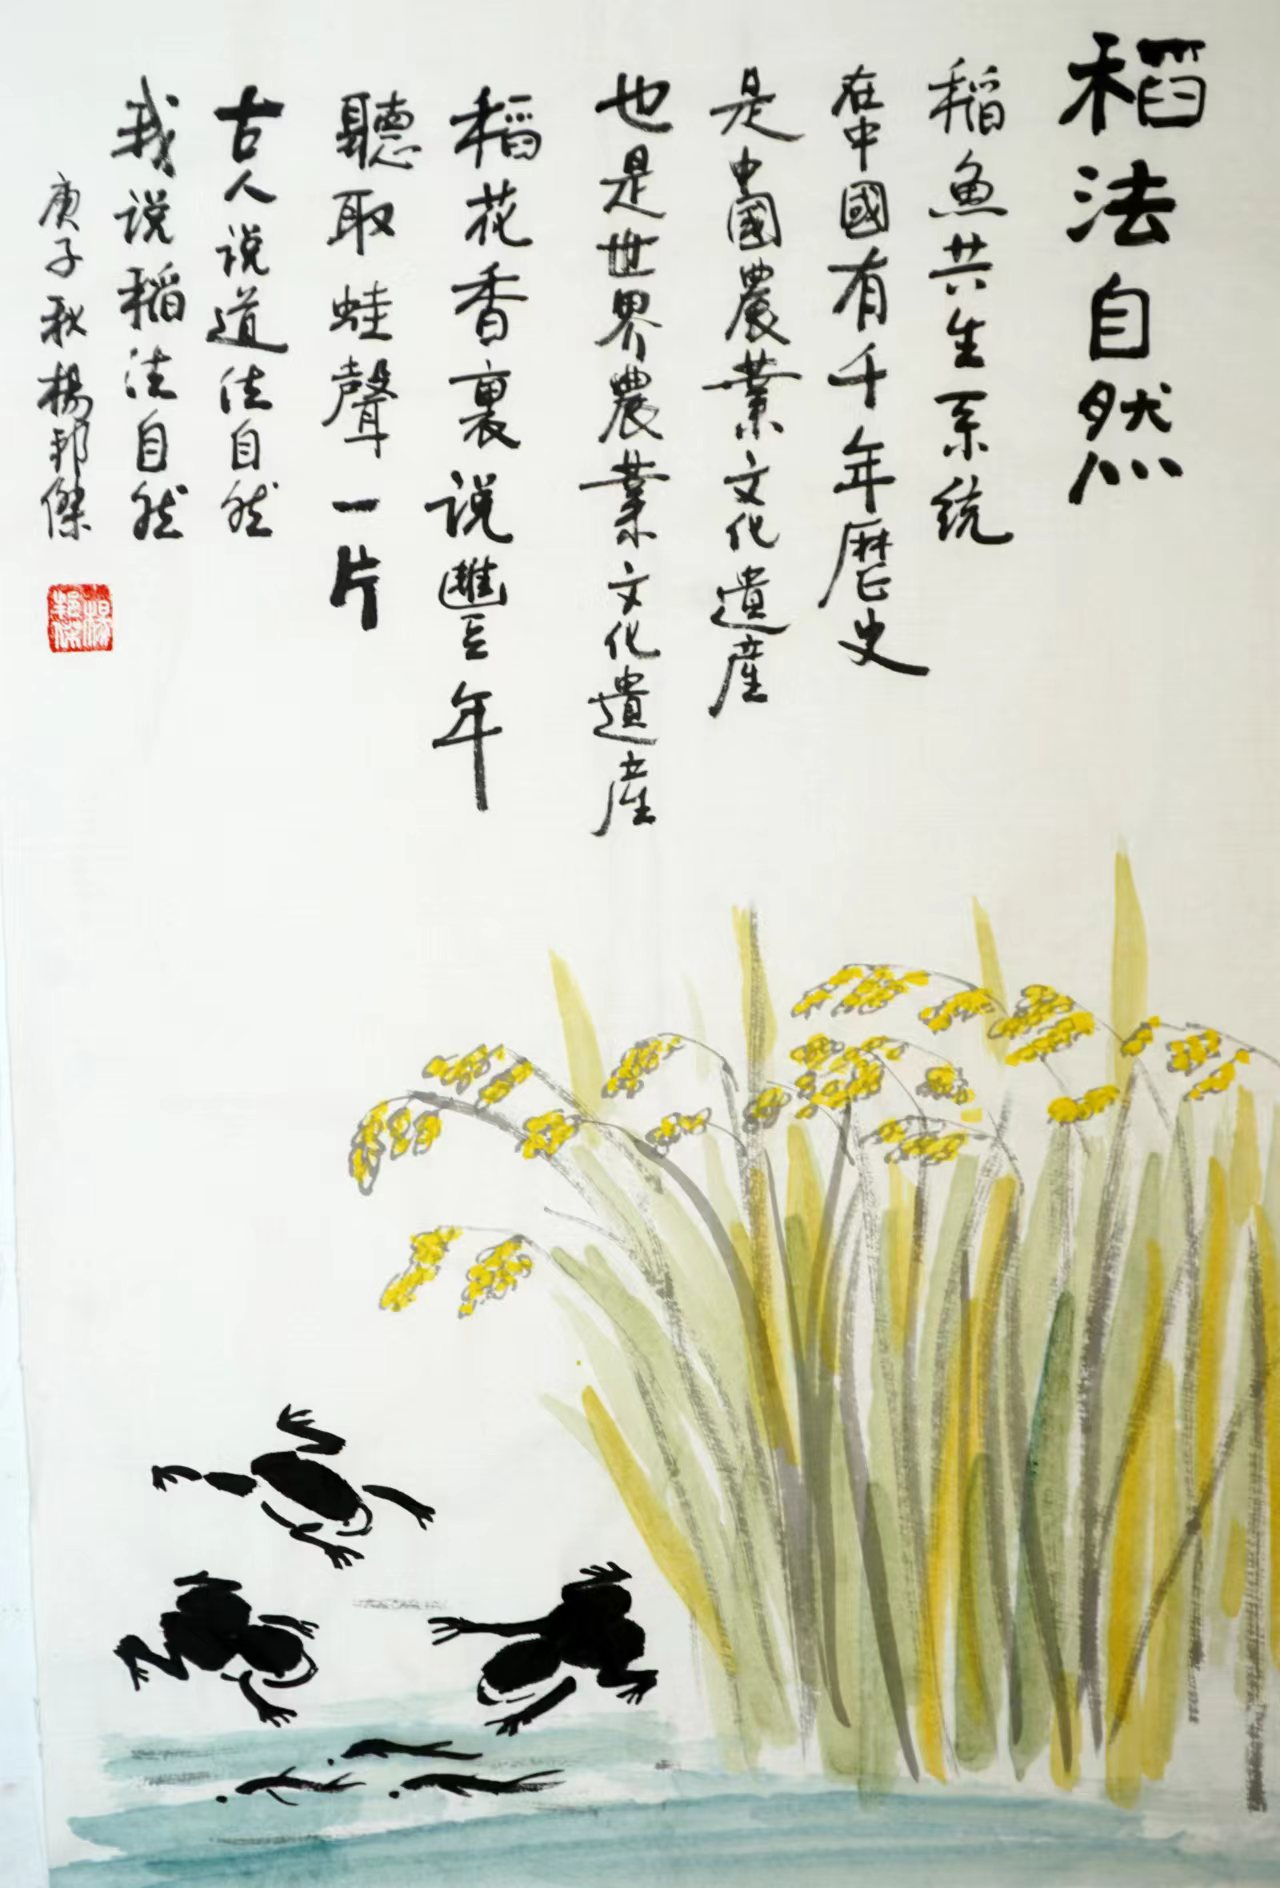 乐山人杨邦杰博士书画近作欣赏——“稻”法自然